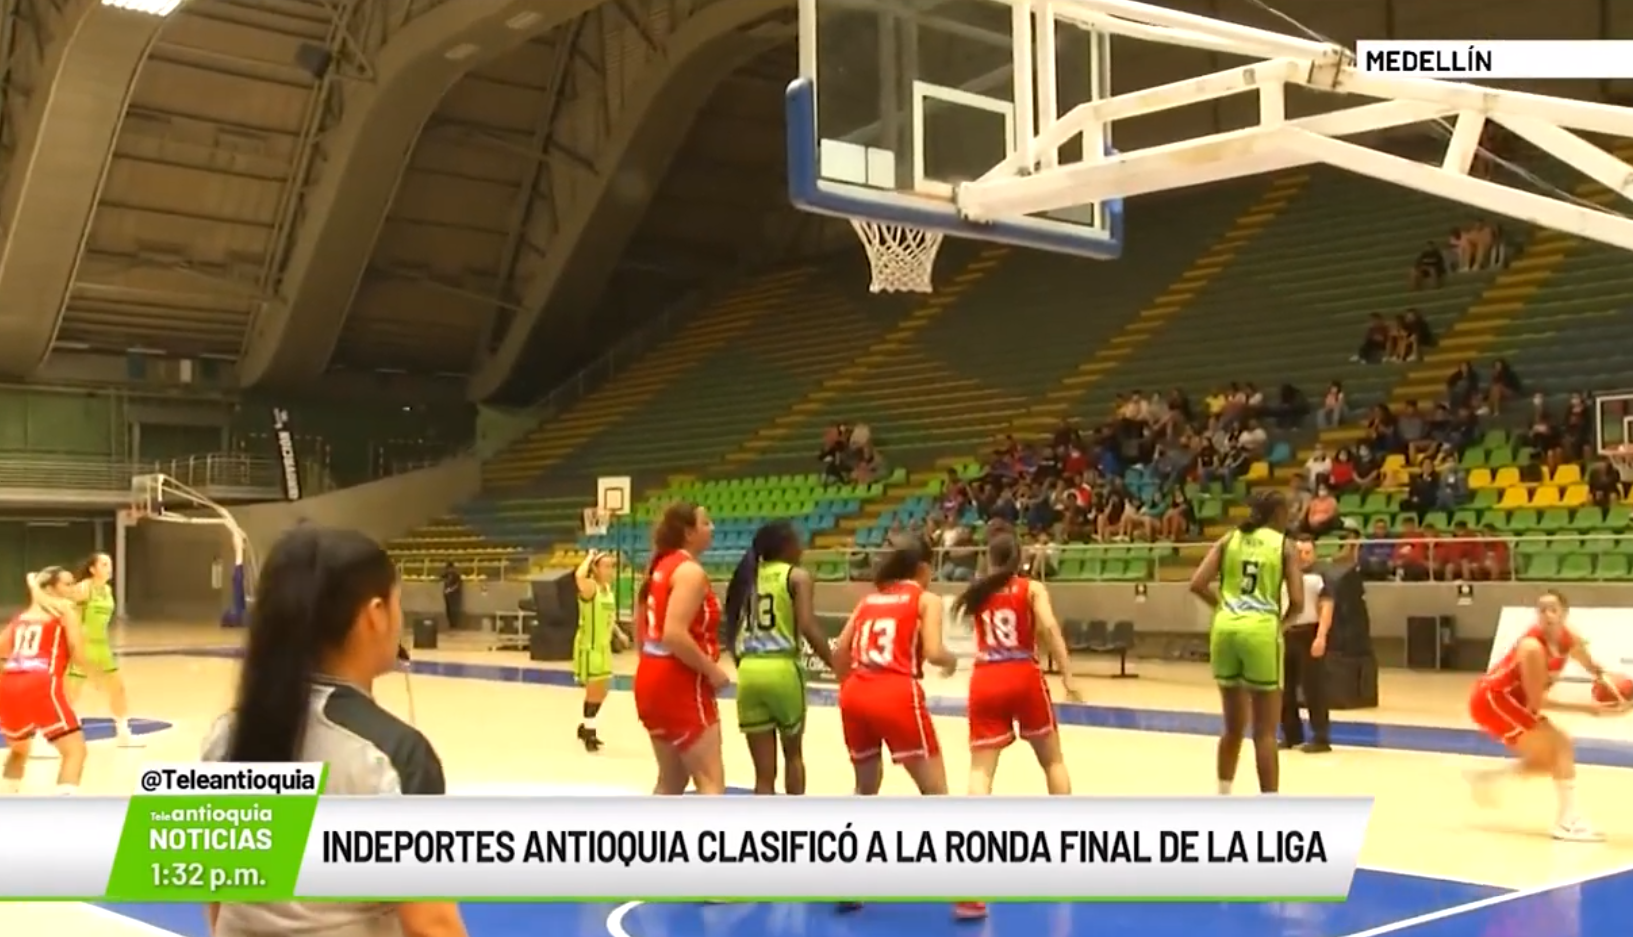 Indeportes Antioquia clasificó a la ronda final de la liga